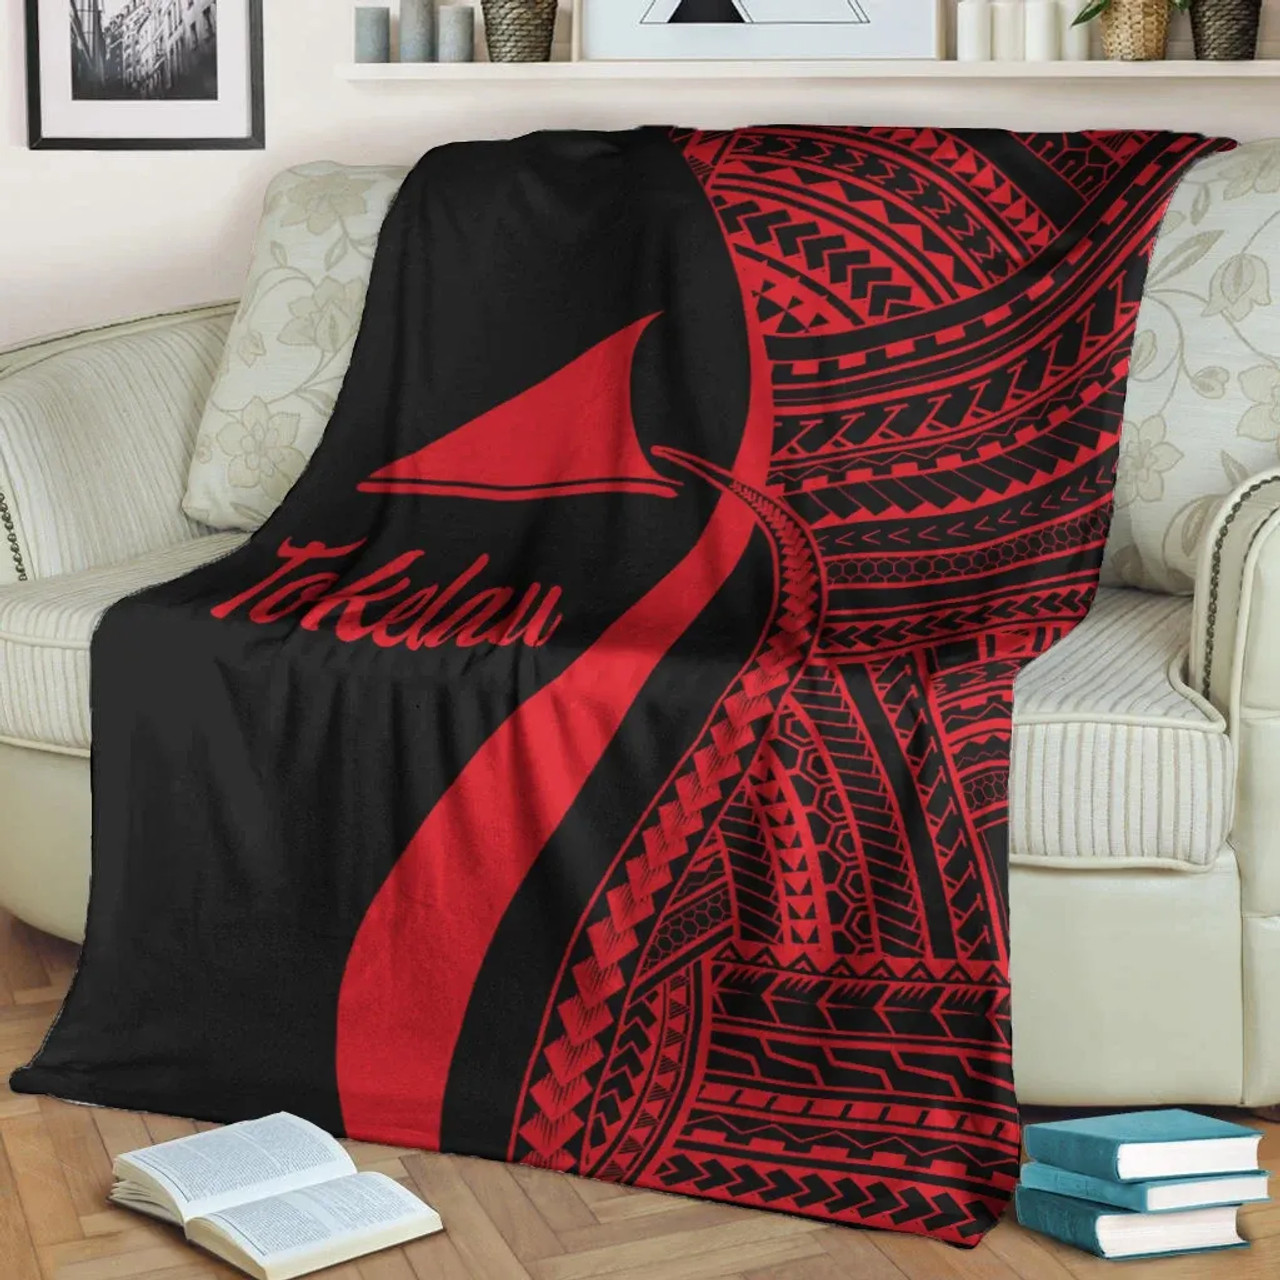 Tokelau Premium Blanket - Red Polynesian Tentacle Tribal Pattern 3